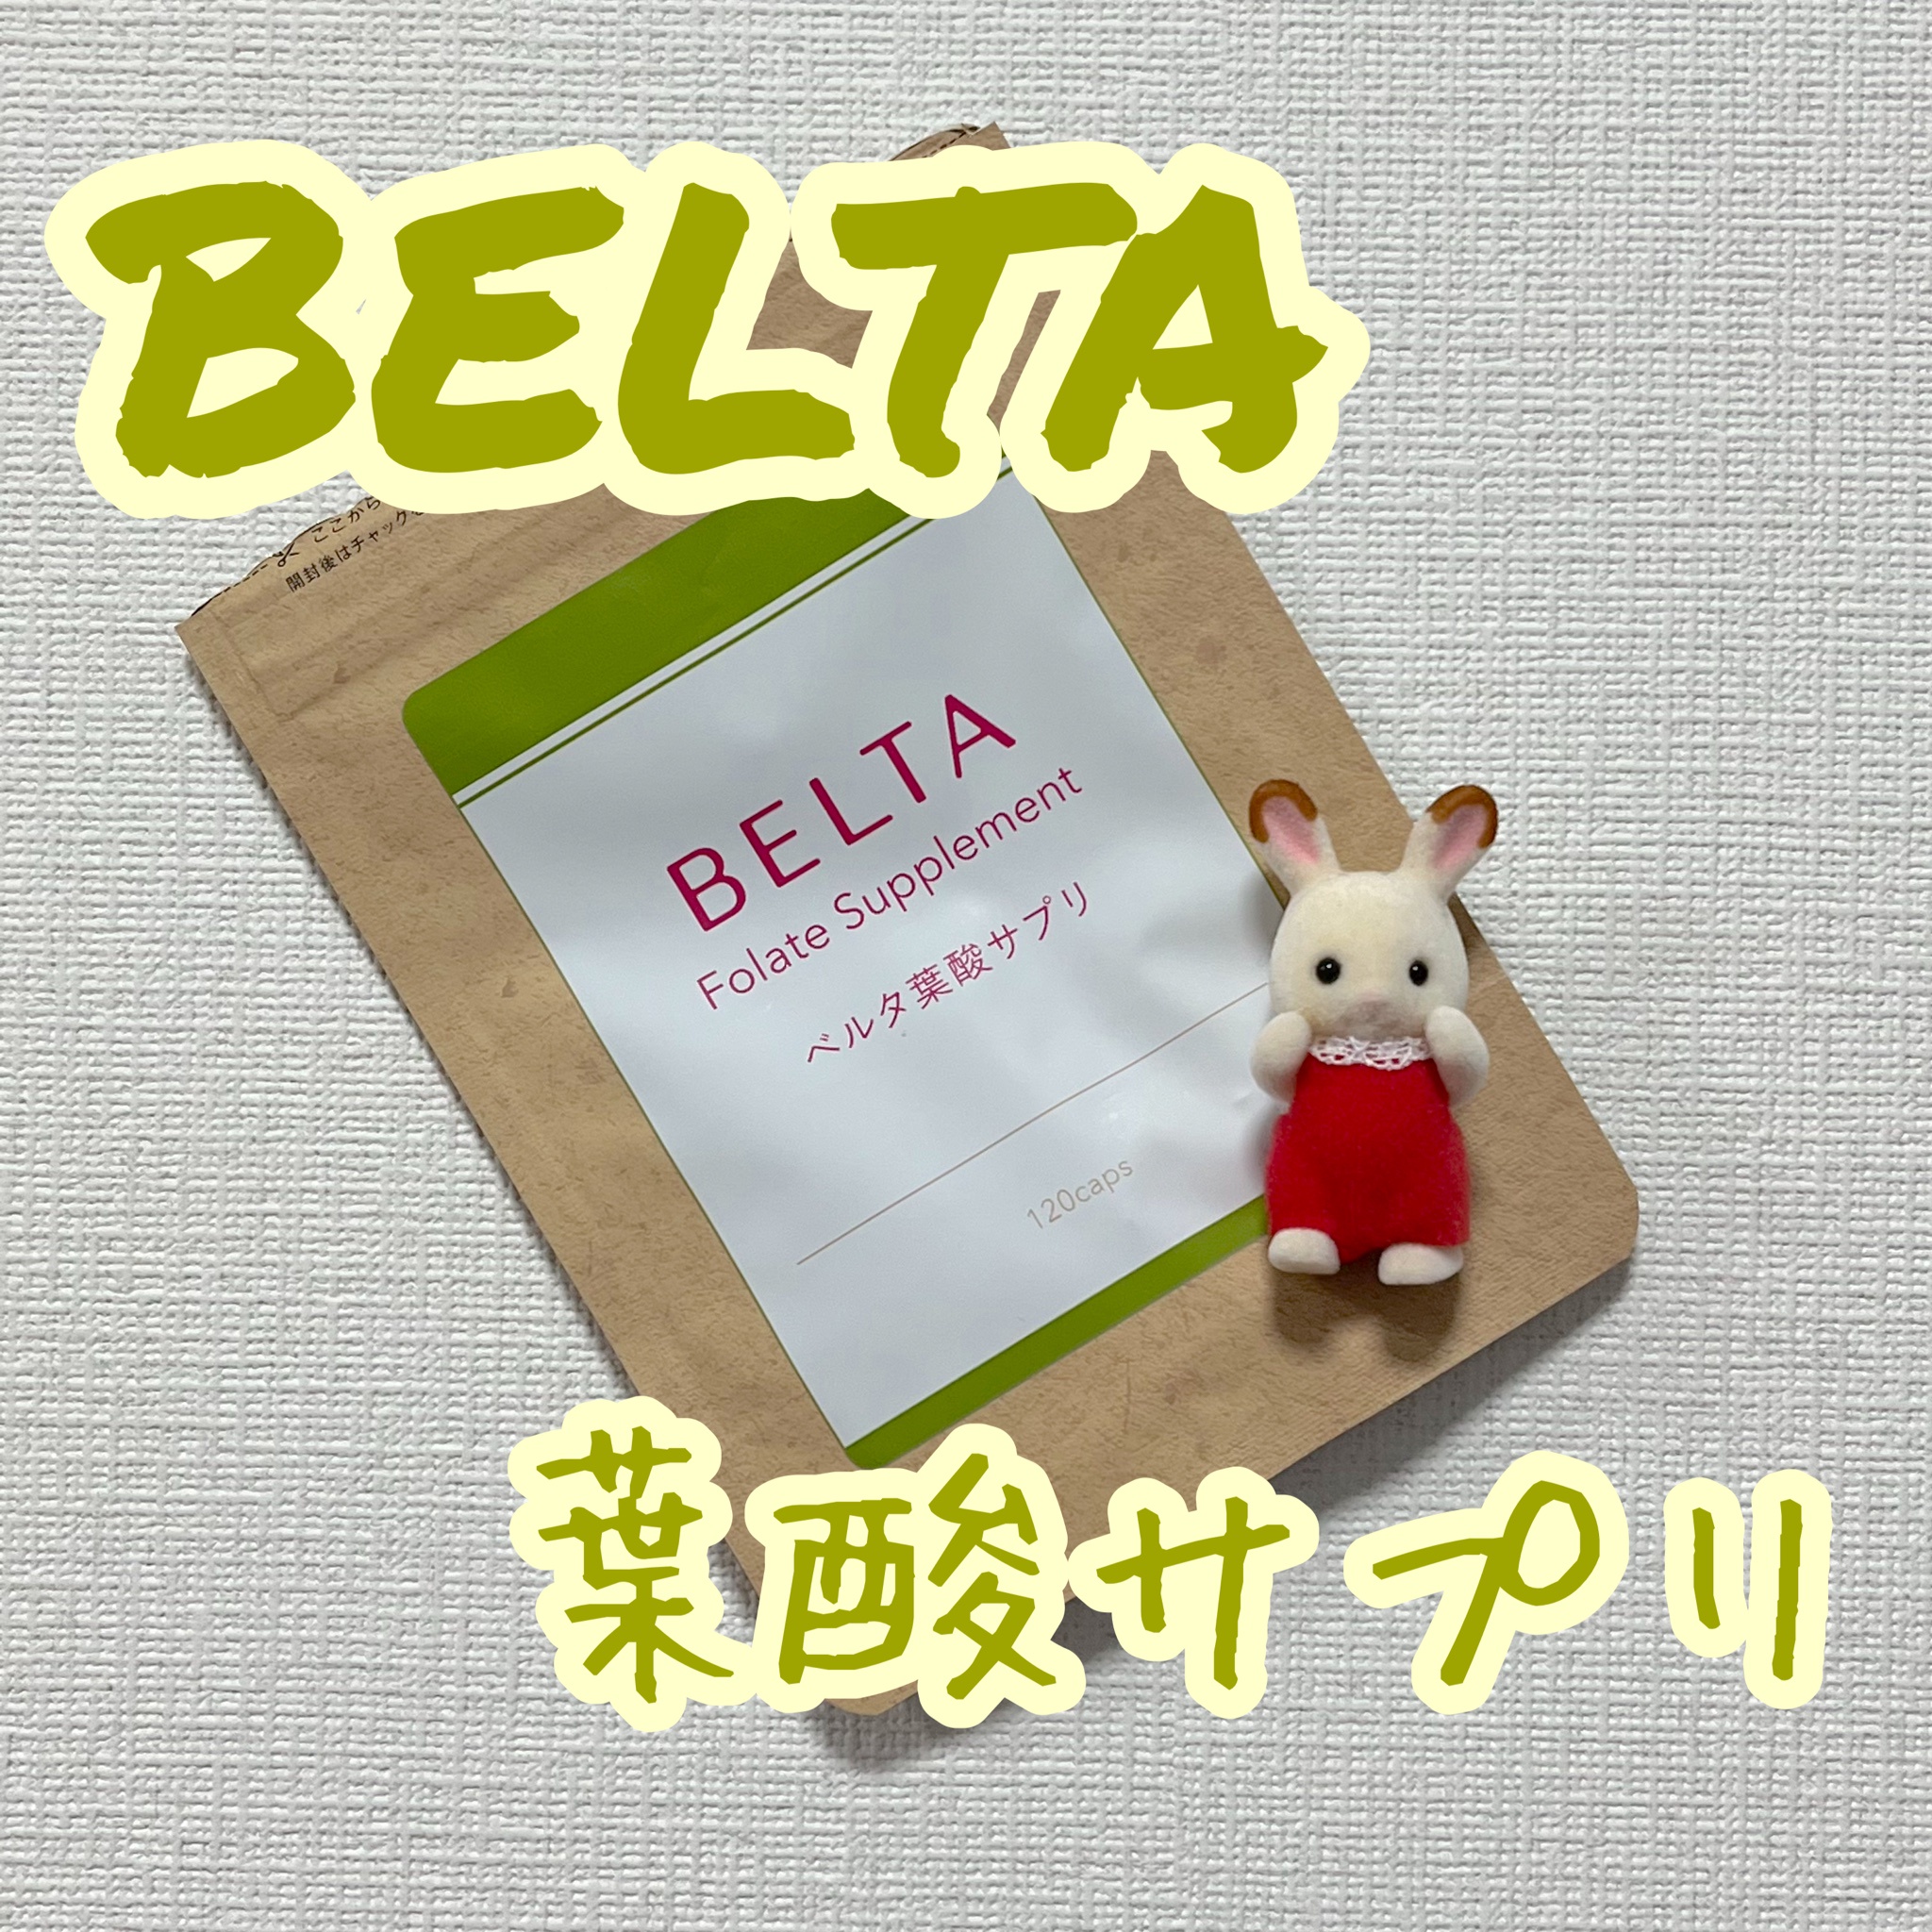 上等な BELTA ベルタ葉酸サプリ リール - eonpay.com.br